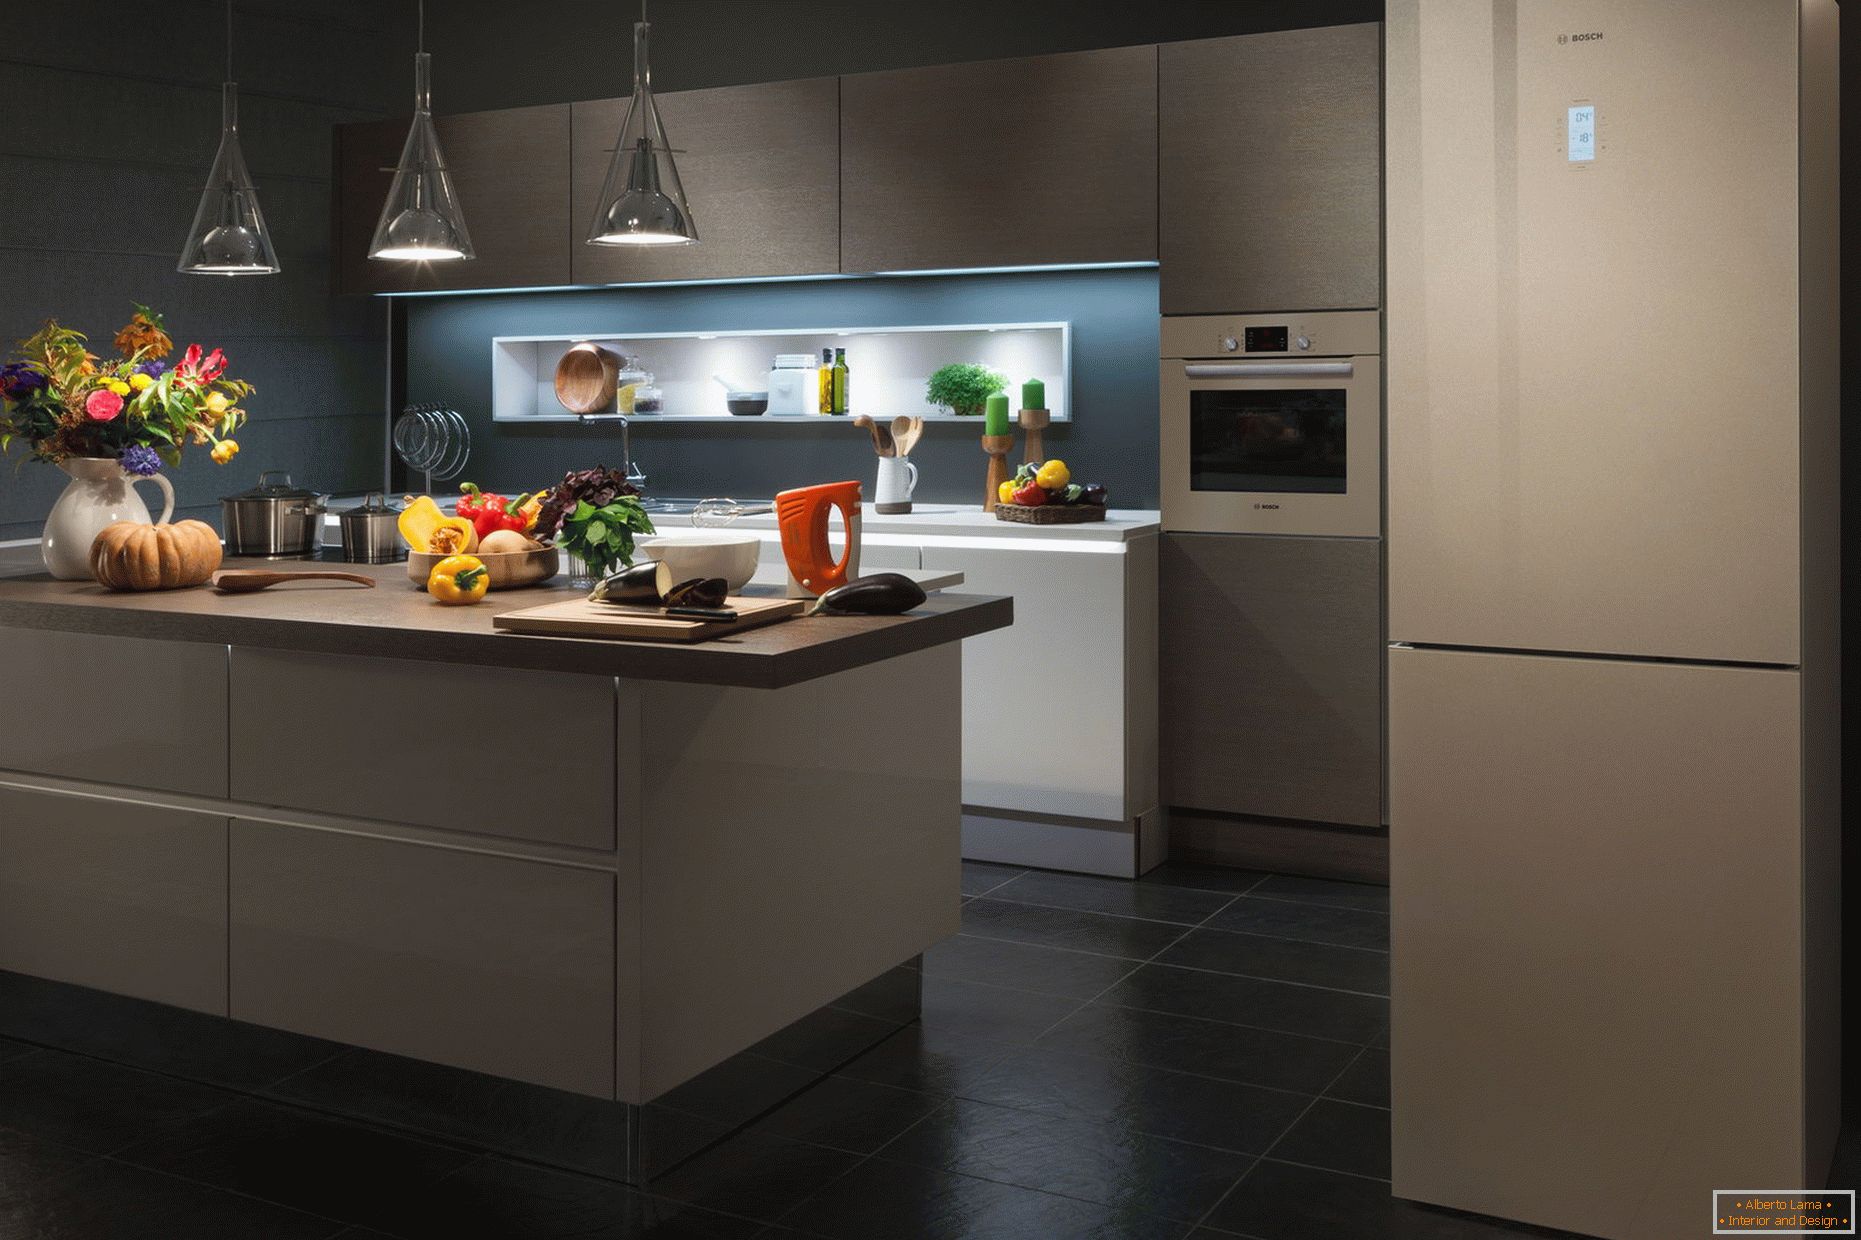 Moderní kuchyňský interiér s lednicí